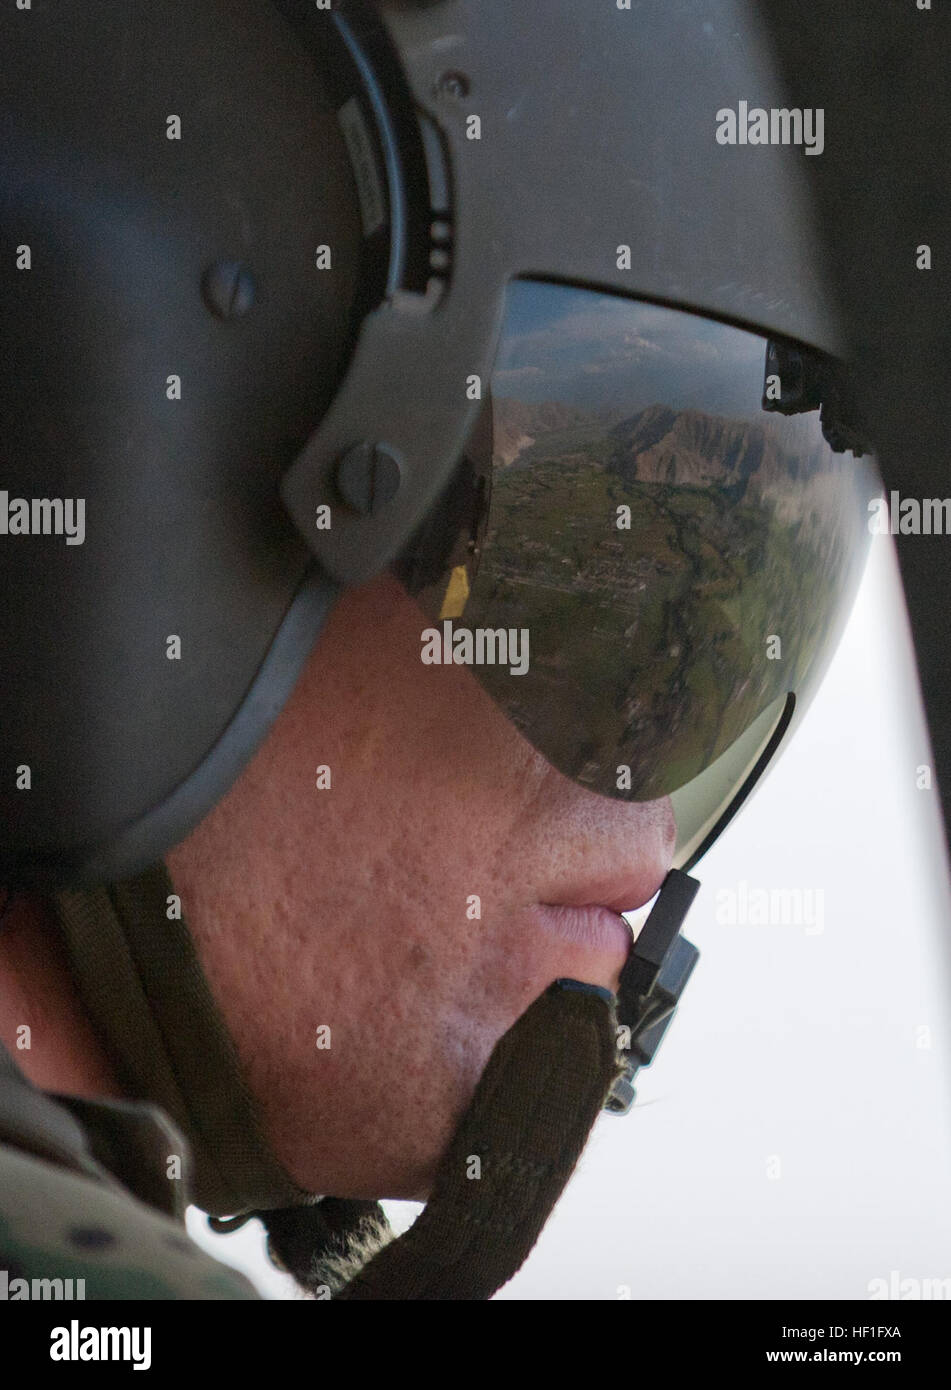 Una vista aérea de Jalalabad se refleja en la visera del U.S. Army Spc. Trevor Milbury, un jefe de la tripulación con el pelotón Dustoff Medevac, Compañía Charlie, 3er Batallón, 238ª Regimiento de Aviación, Task Force Dragon, durante un ejercicio de entrenamiento de la grúa en un helicóptero UH-60 Blackhawk cerca de la base de operaciones avanzada Fenty, provincia de Nangarhar, Afganistán, el 16 de septiembre de 2013. Equipos de evacuación médica proporcionado atención de urgencia a las fuerzas estadounidenses y de la Coalición, y transporte de pacientes por aire para instalaciones de atención médica. Utilizando un polipasto permite medevac tripulaciones para subir y bajar de suministros y personal en áreas remotas o traicionero whe Foto de stock